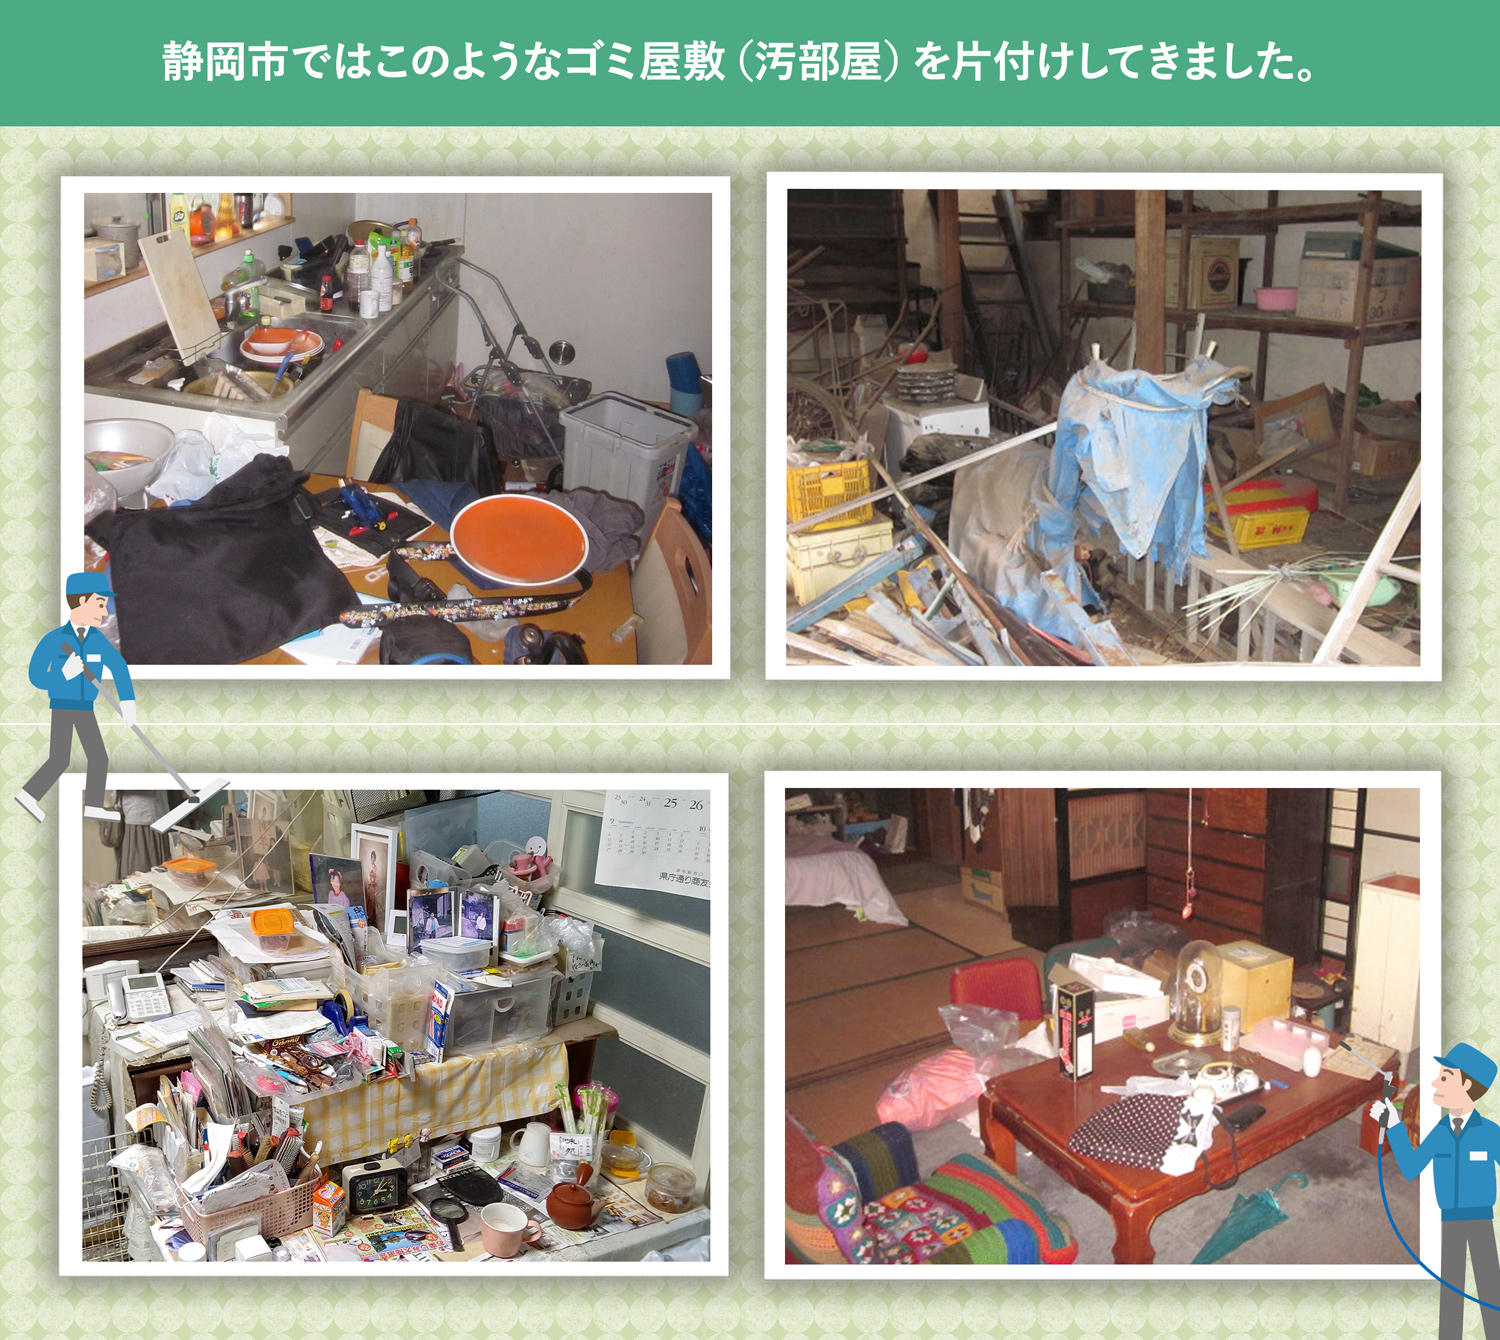 静岡市で行ったで行ったごみ屋敷・汚部屋の片付けの一例